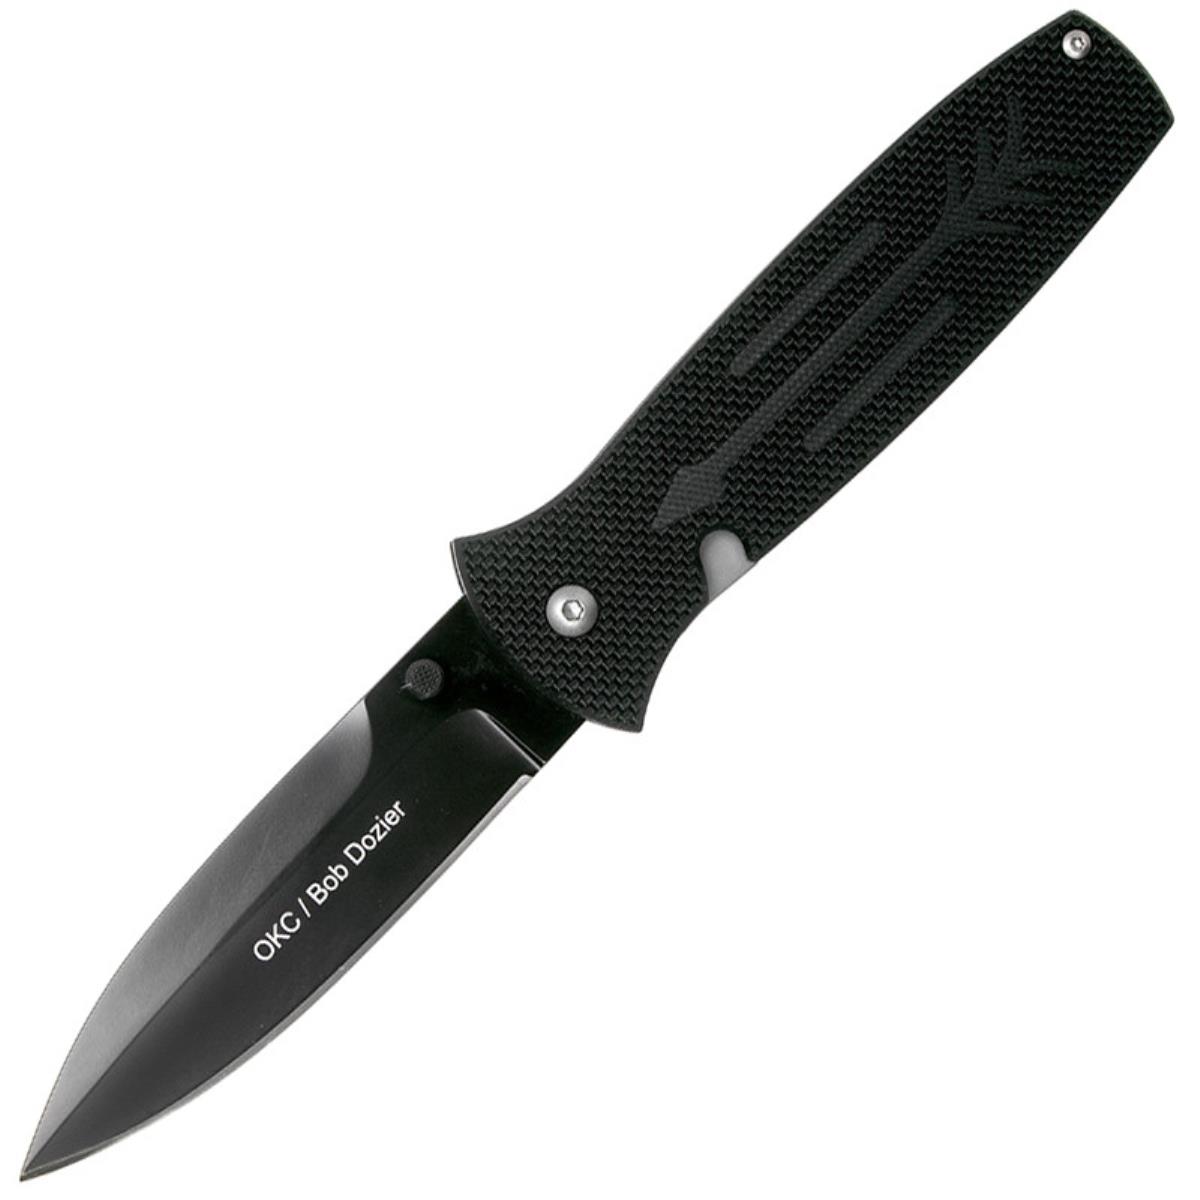 Нож OKC Dozier Arrow складн.,чёрная рукоять, G10, клинок D2, чёрное покрытие (9101)  ONTARIO нож с фиксированным клинком ontario little bird black cord сталь 1095 рукоять паракорд black